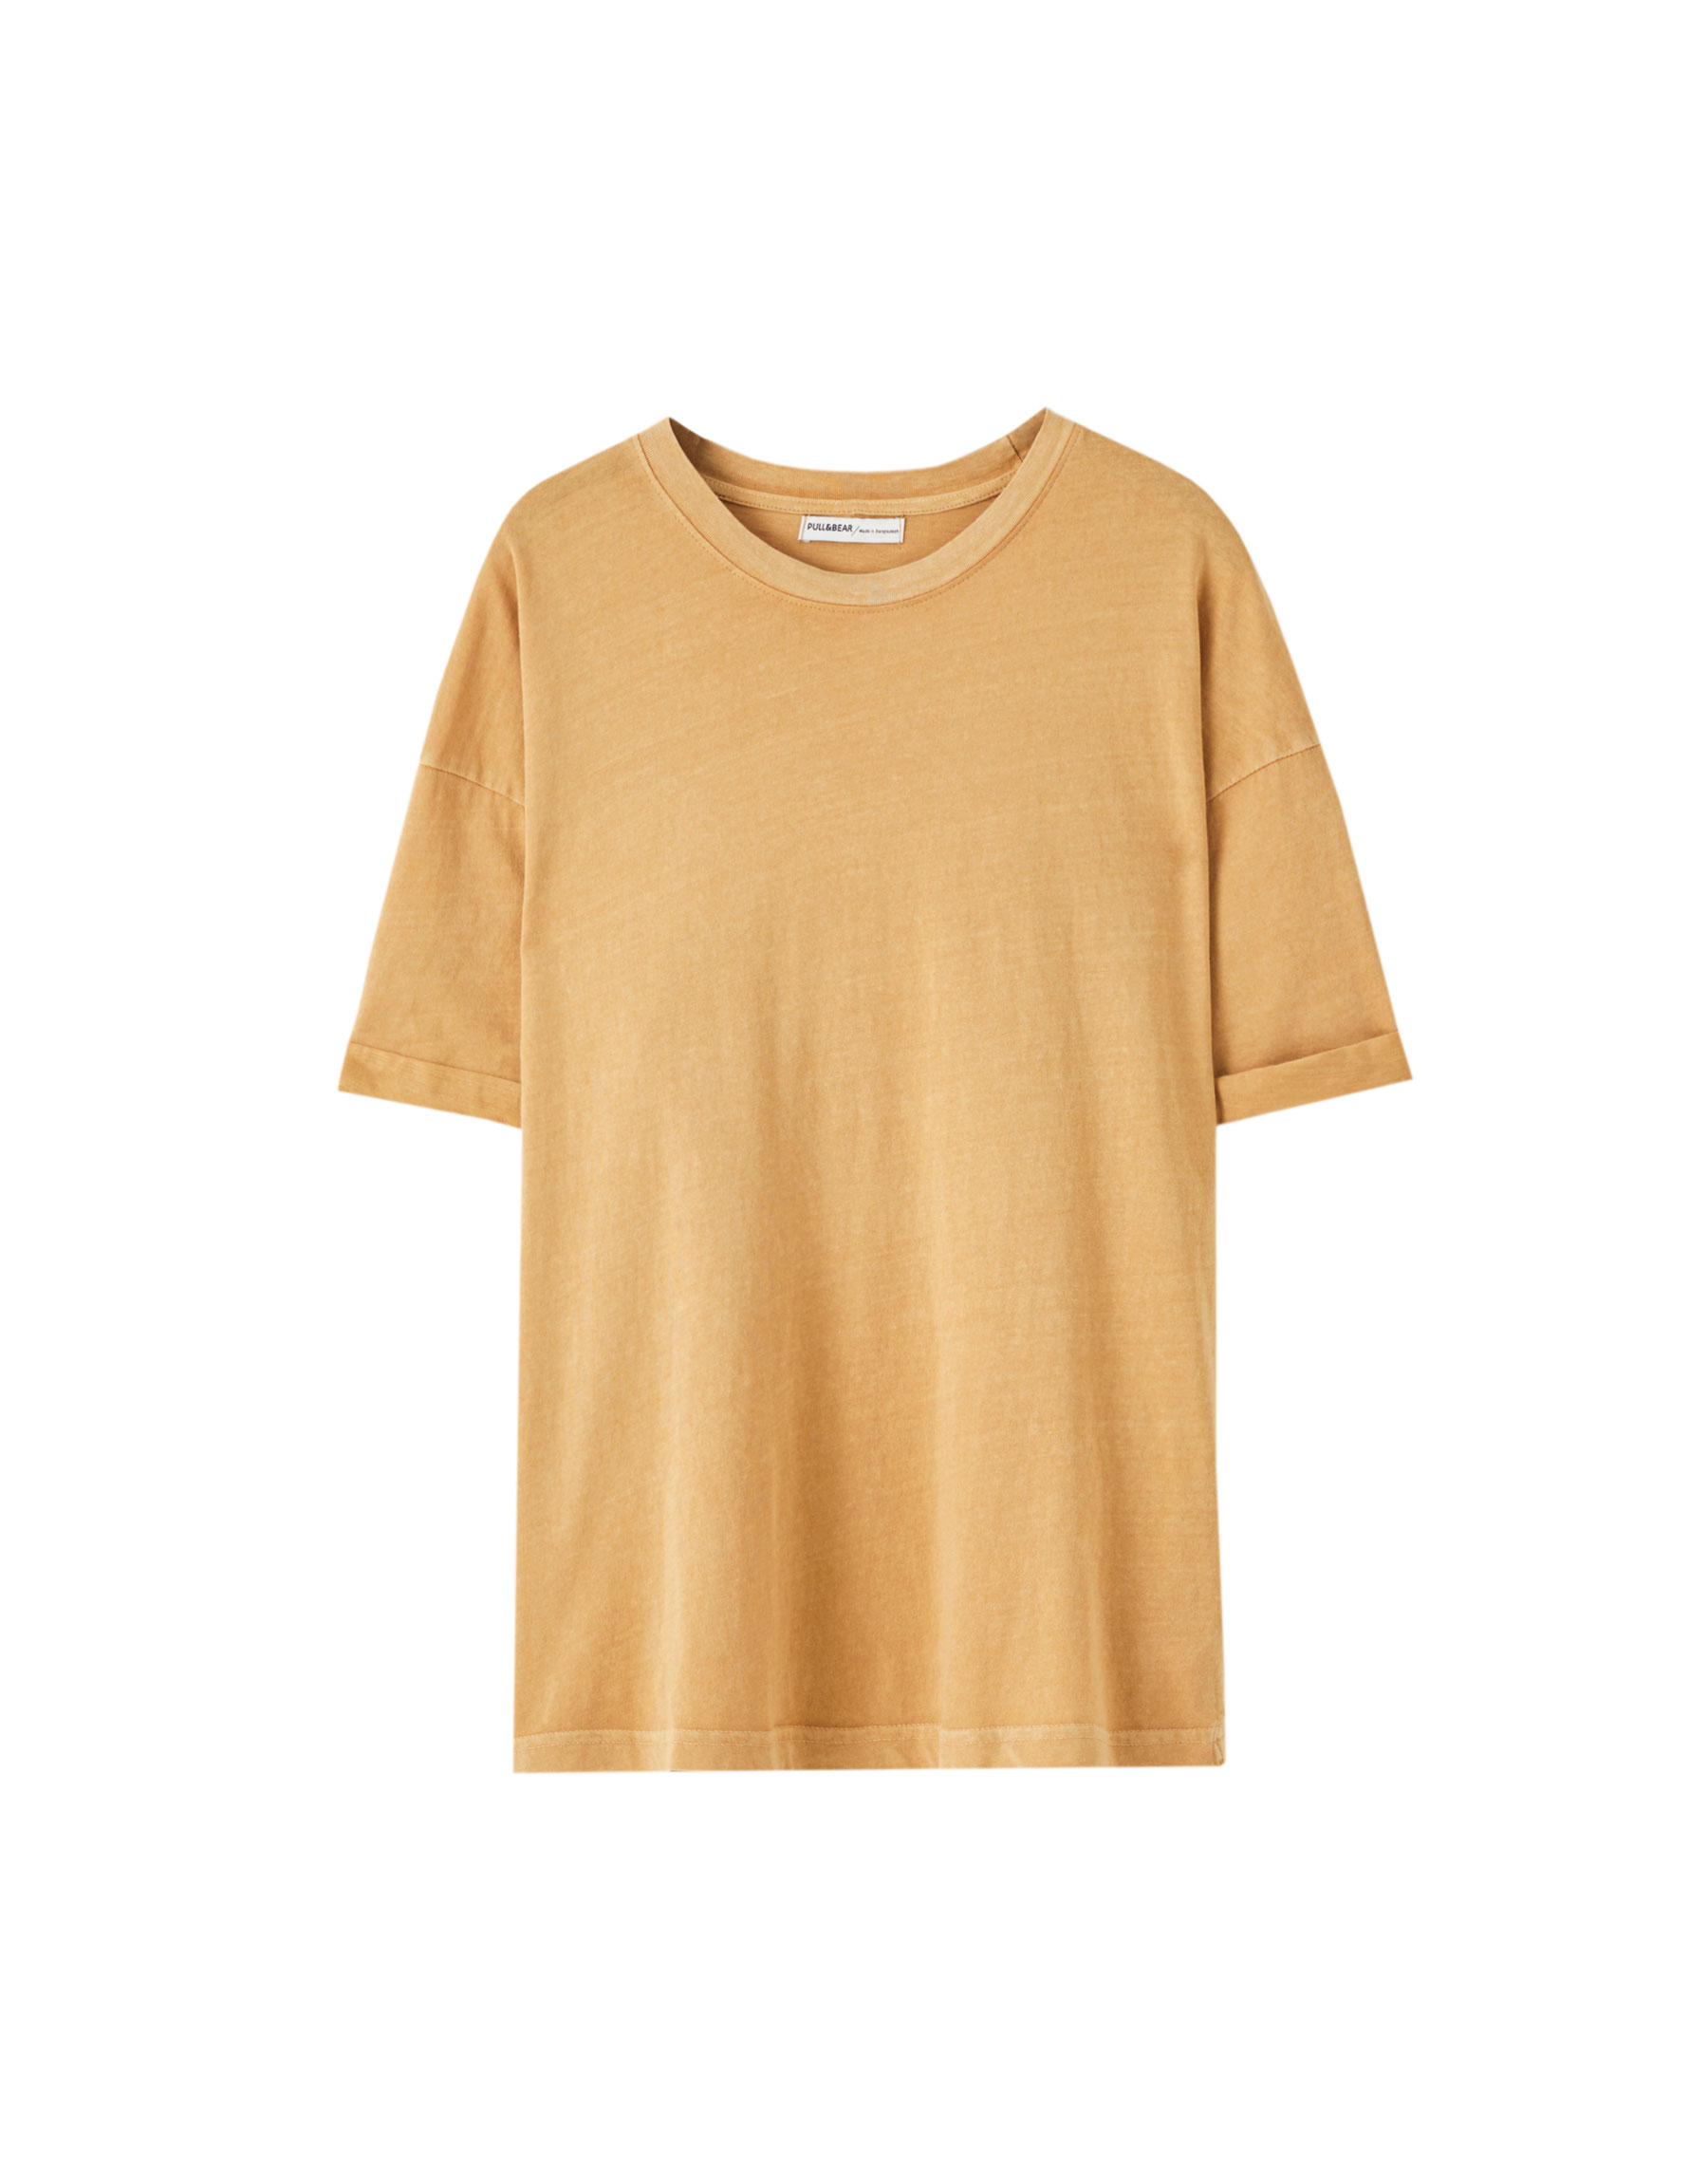 РЫЖЕВАТО-КОРИЧНЕВЫЙ Базовая цветная футболка свободного кроя Pull & Bear